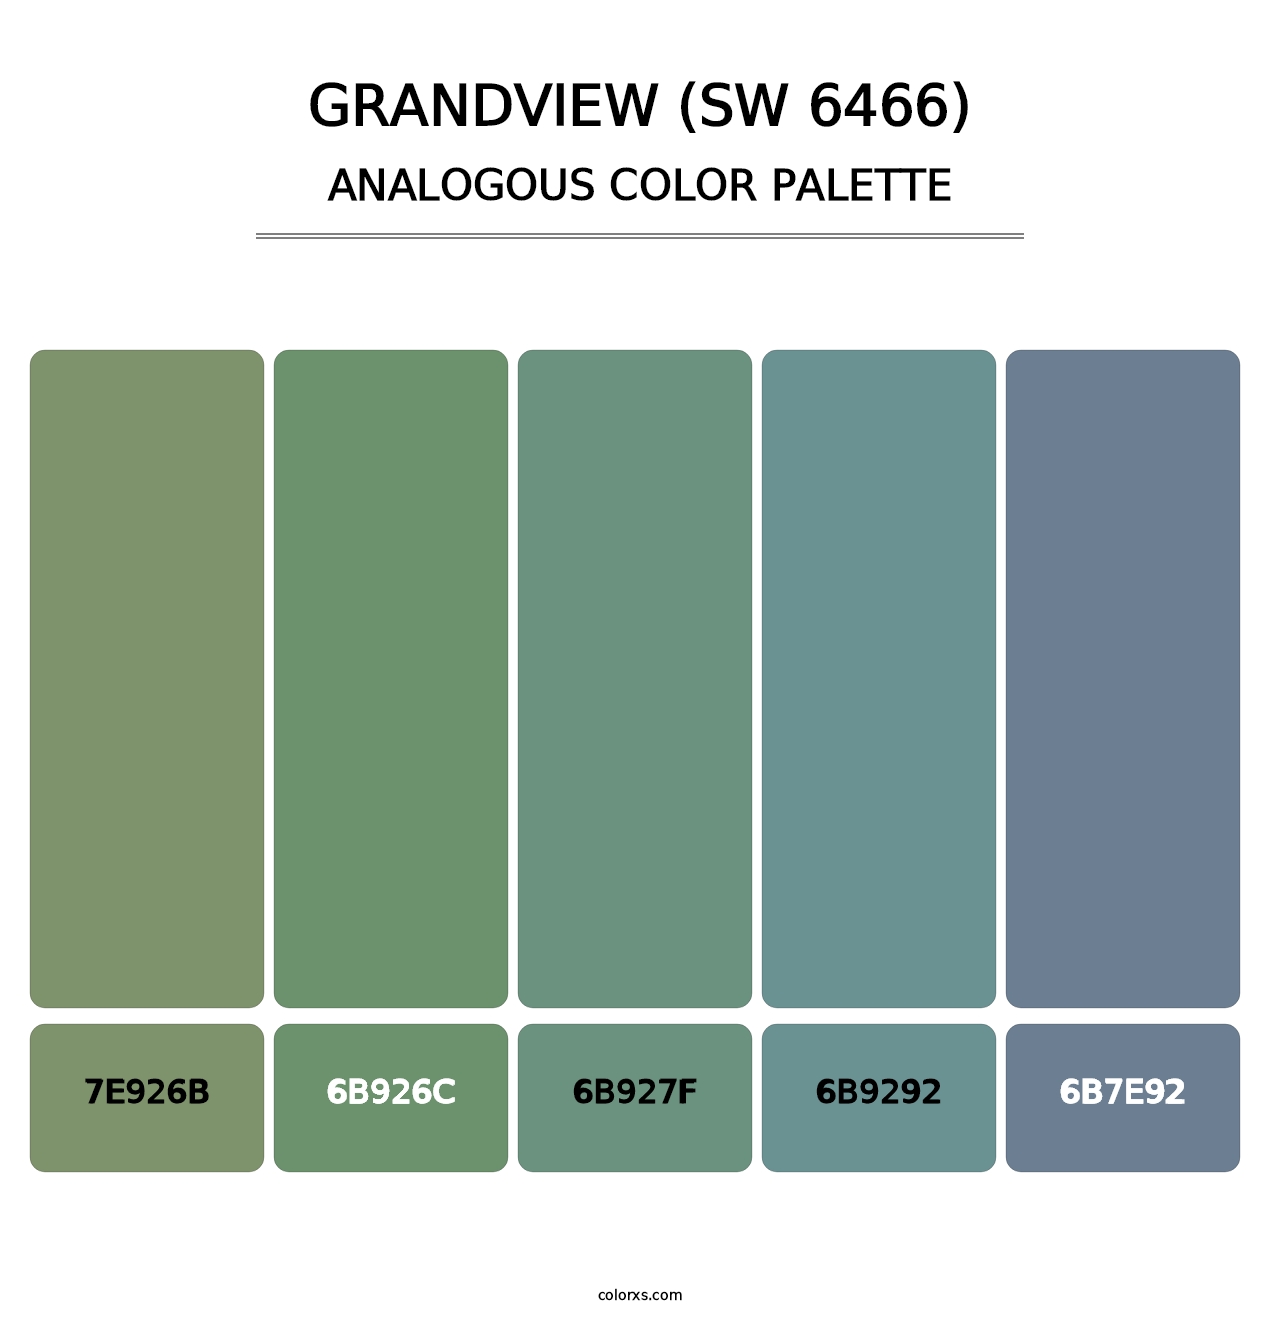 Grandview (SW 6466) - Analogous Color Palette